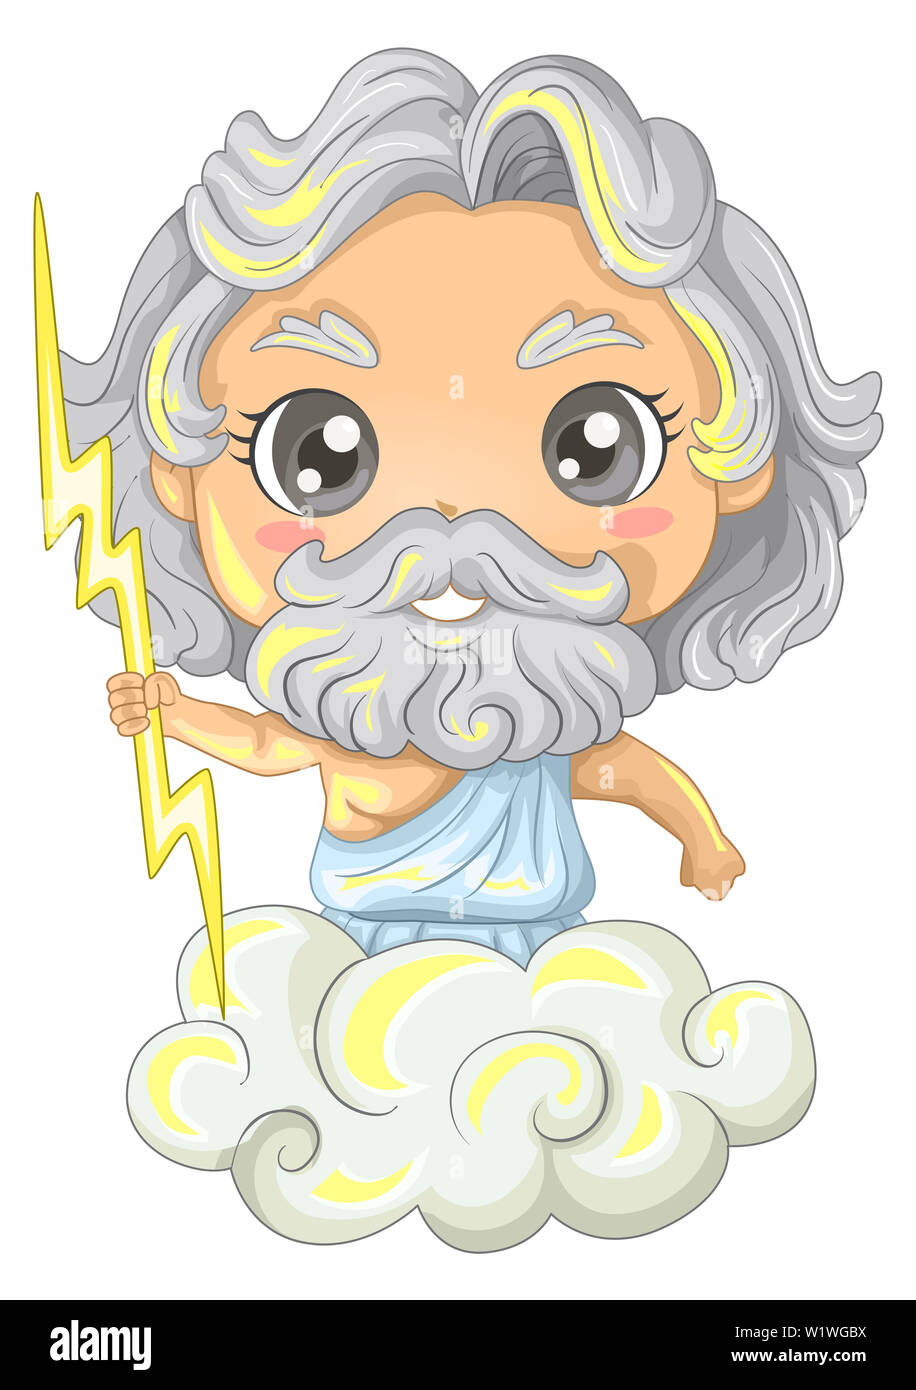 Illustrazione di un bambino ragazzo che indossa il dio greco Zeus tenendo un fulmine e a cavallo di un cloud Foto Stock